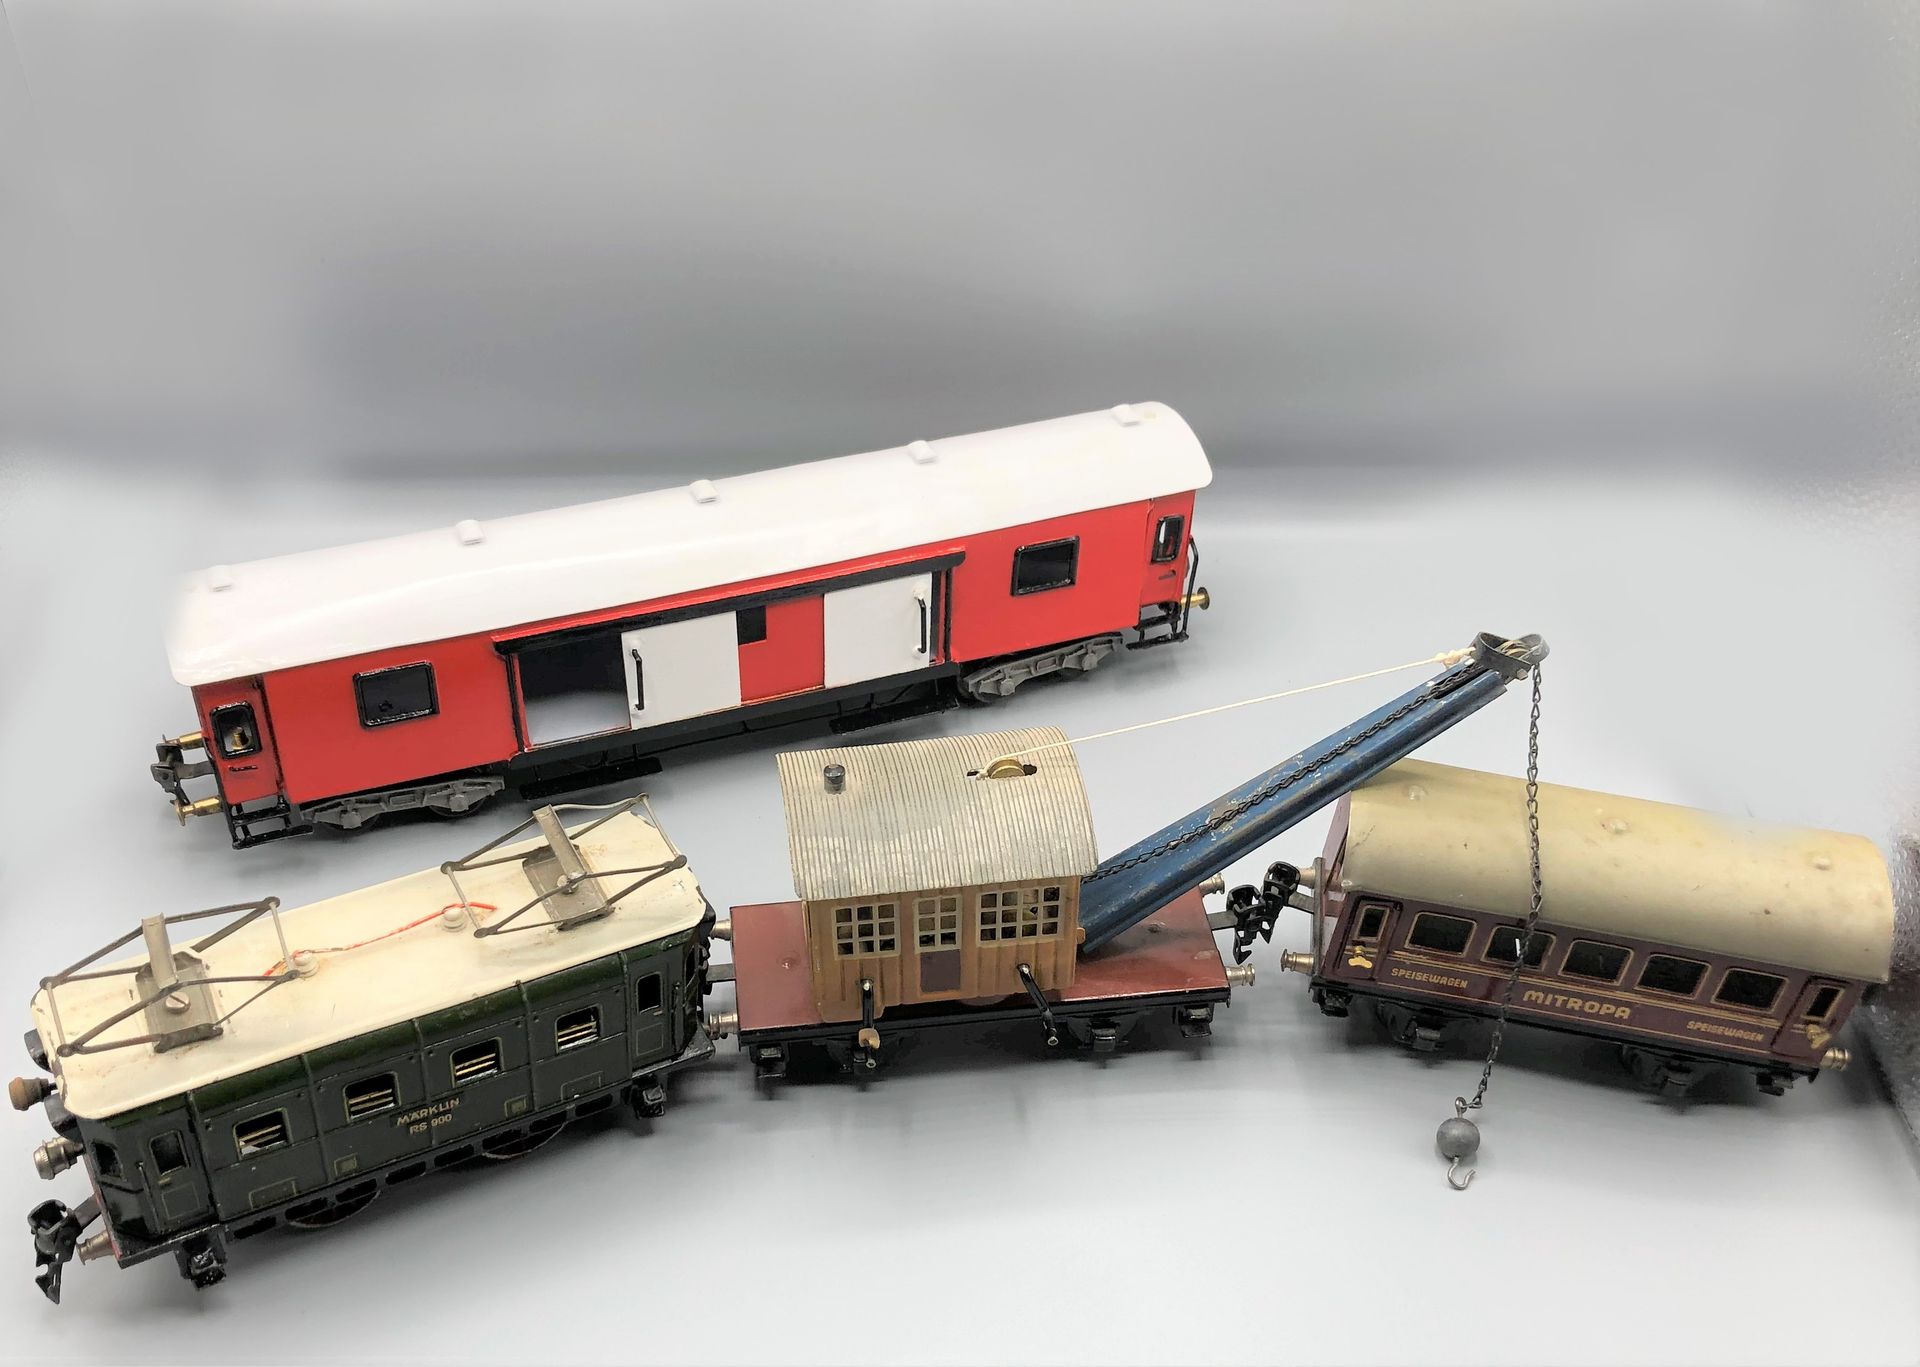 Null MARKLIN和各种-0-

由绿色引擎、邮政车、汽车和带吊车的货车组成的货运列车

1930 - 1950



使用状况

更多信息请联系该研究。